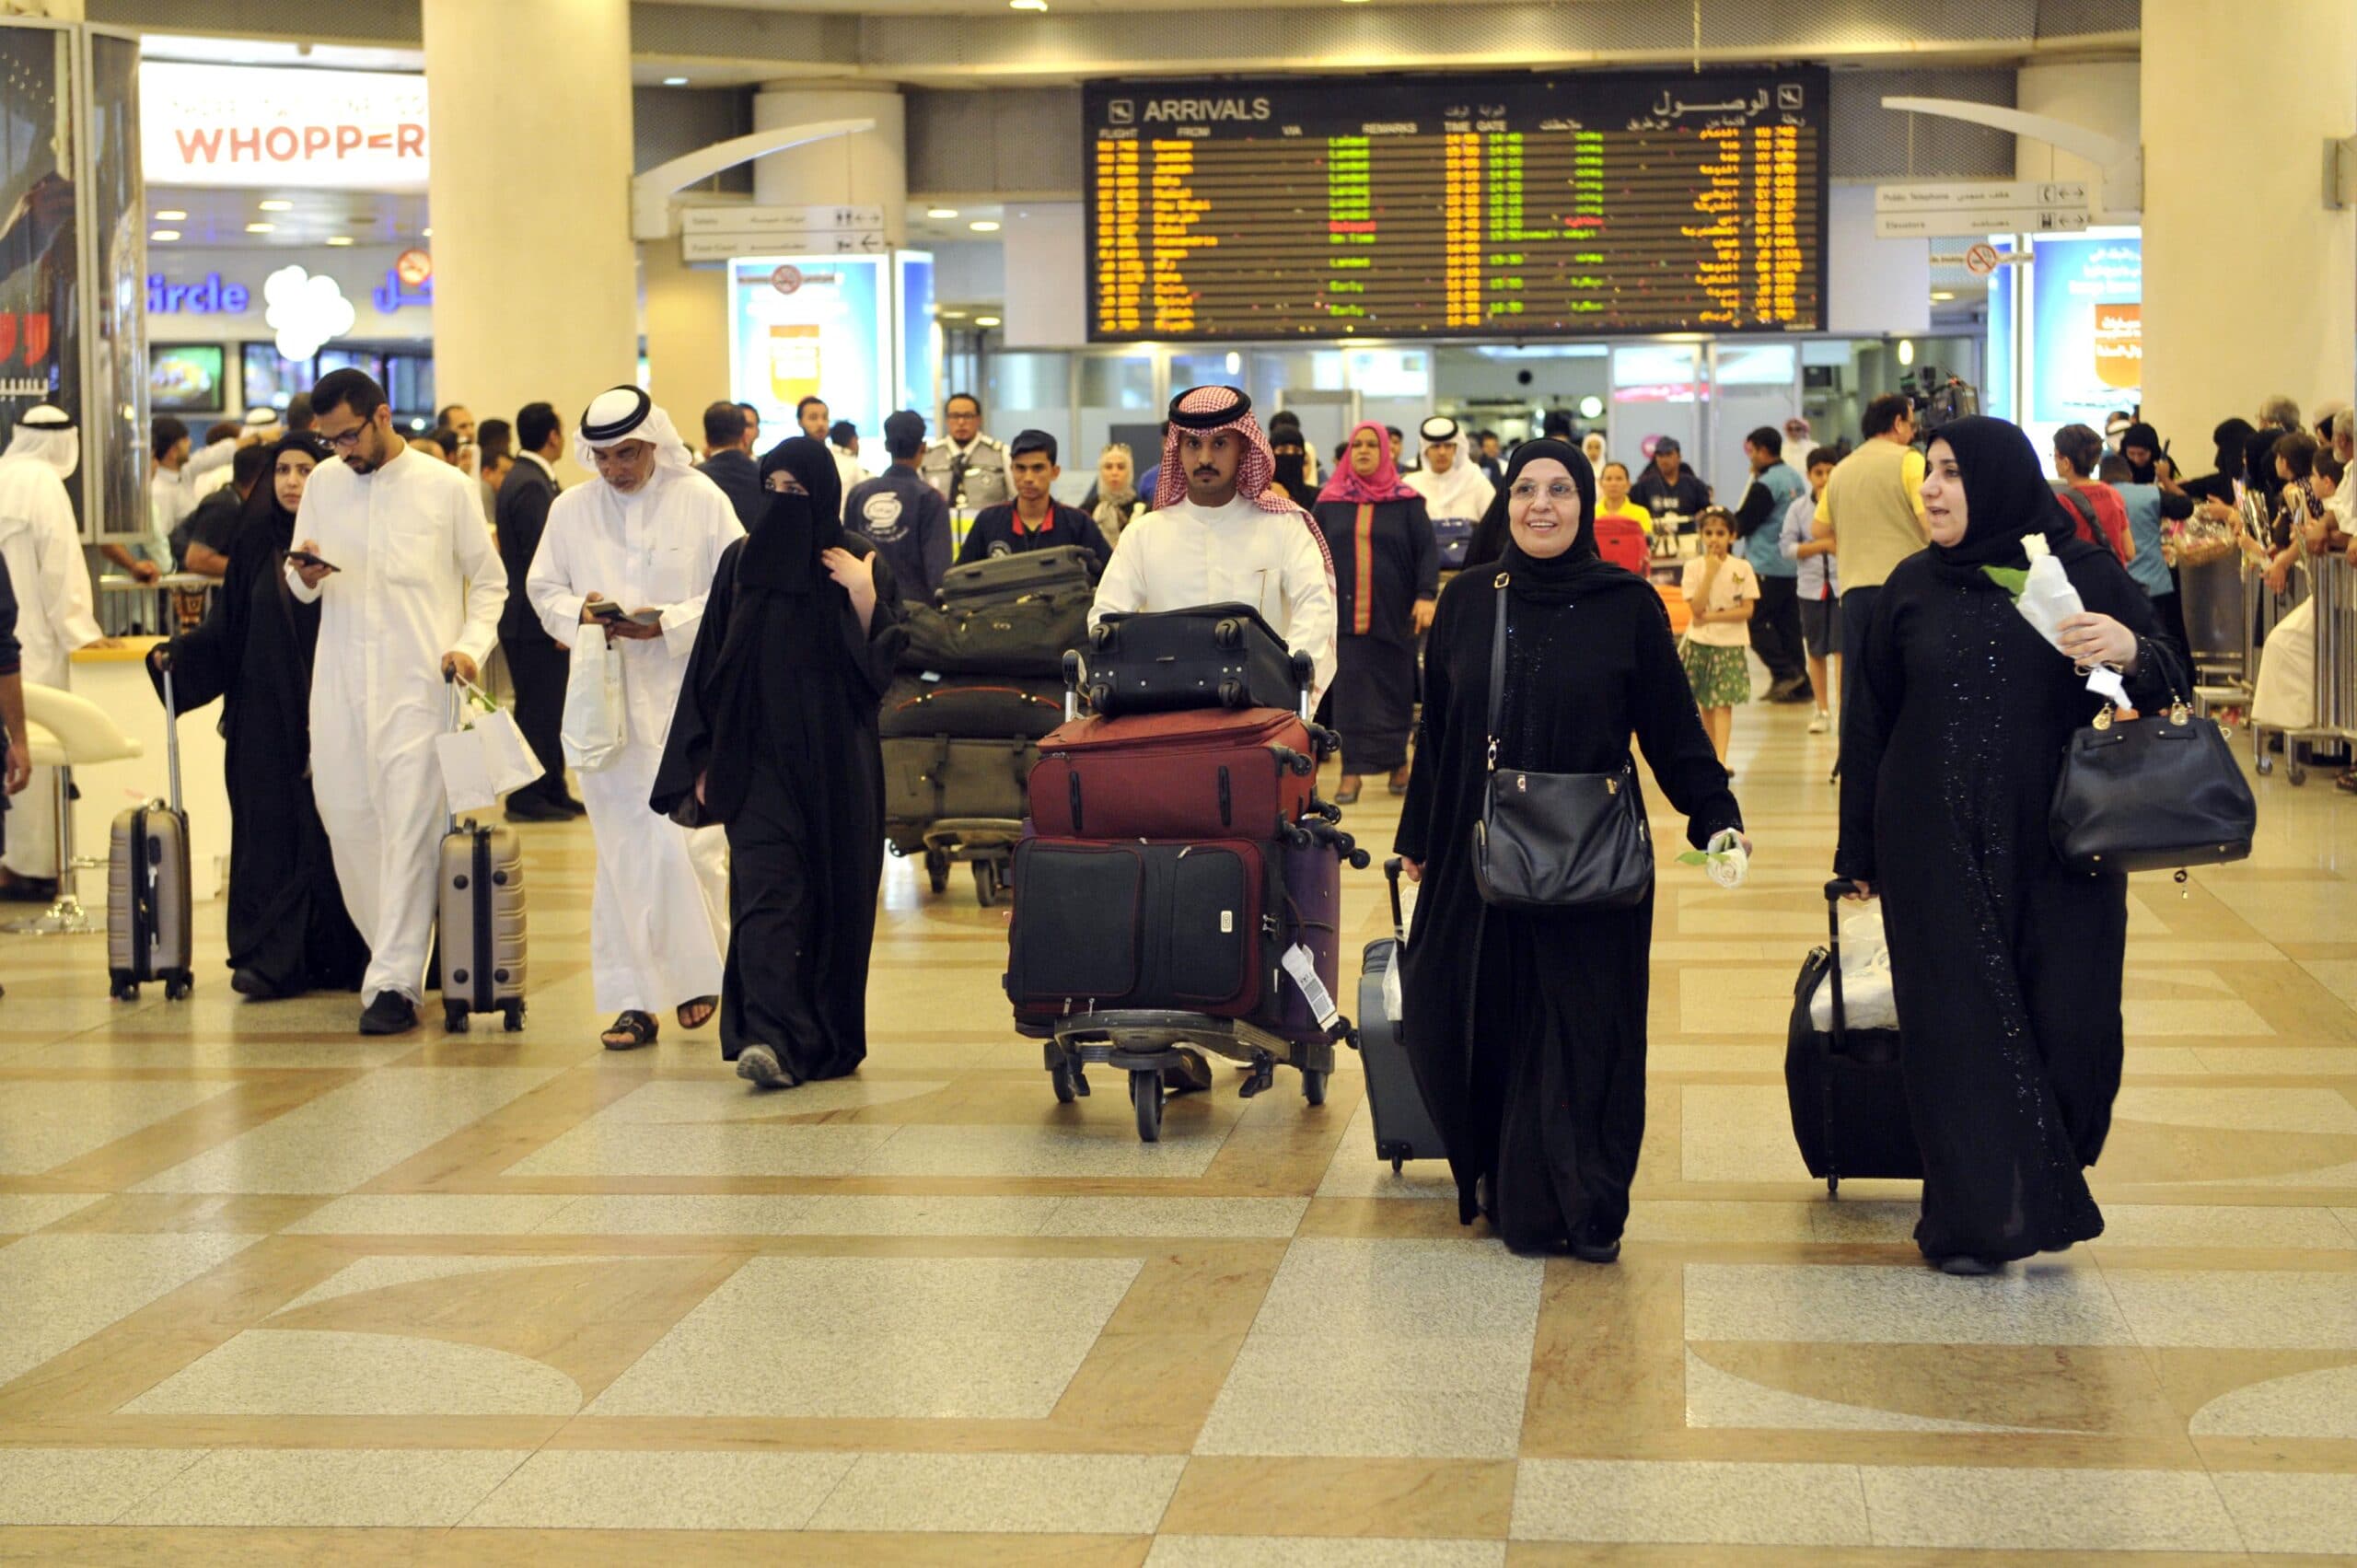 هل تسمح الكويت للمسافرين الذين زاروا إسرائيل بالدخول إلى أراضيها؟